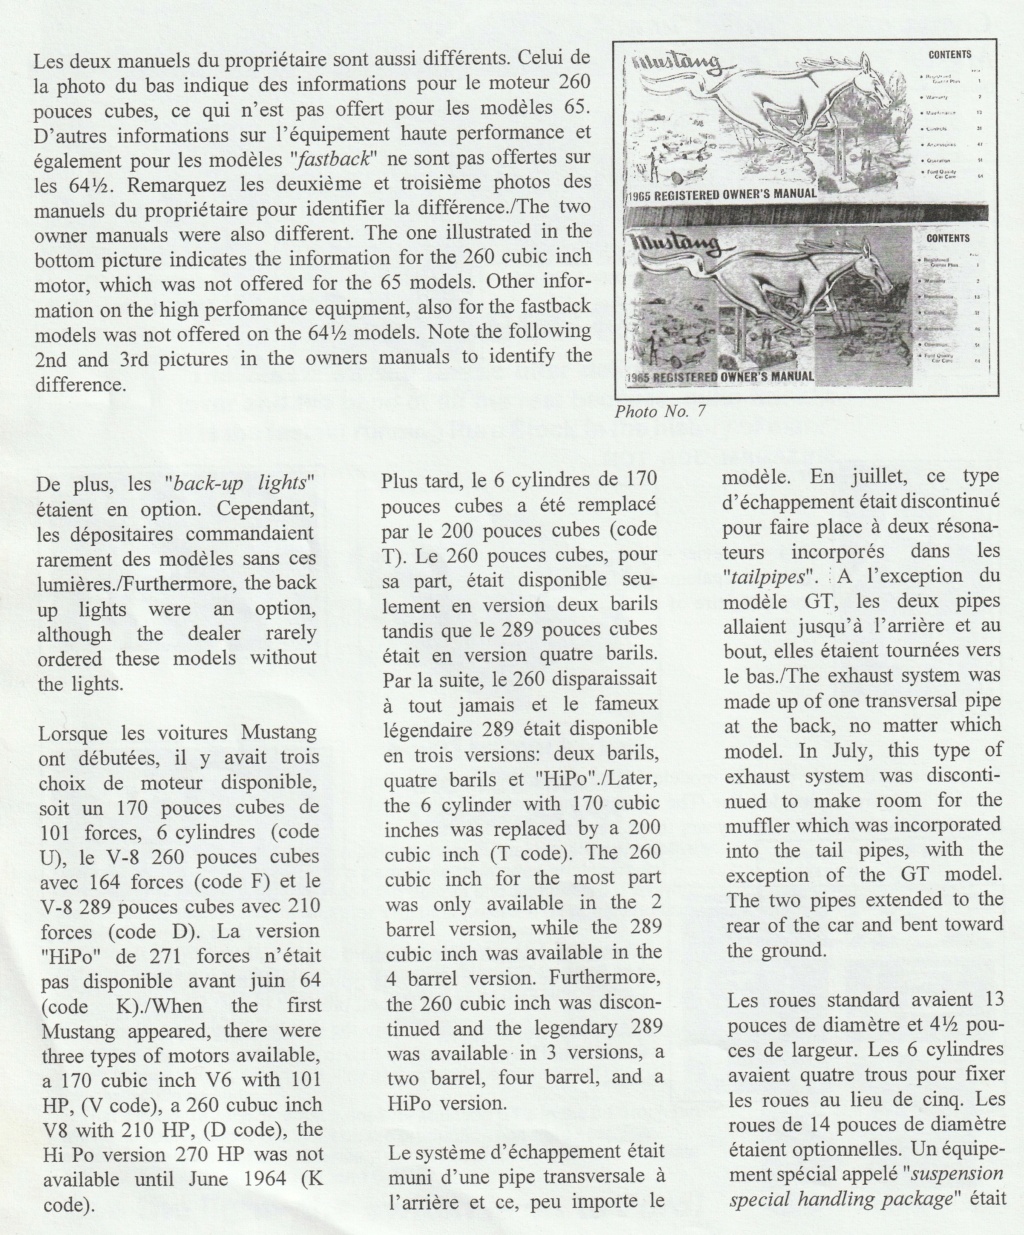 Montréal Mustang dans le temps! 1981 à aujourd'hui (Histoire en photos) - Page 8 Img_2335